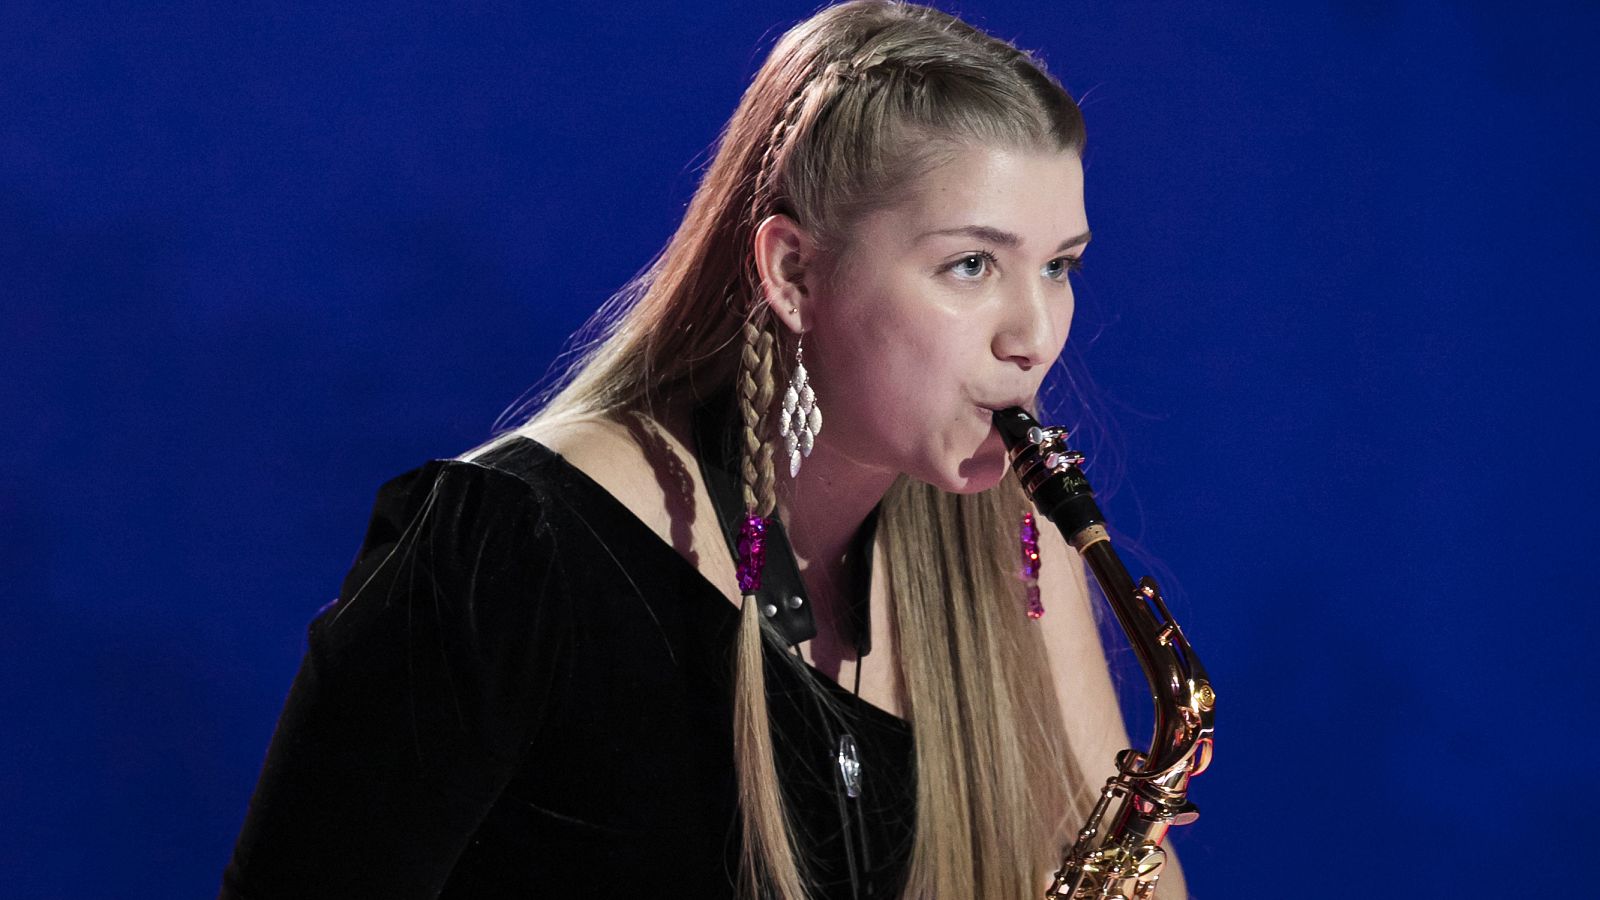 Gisela protagoniza una gran actuación tocando el saxofón